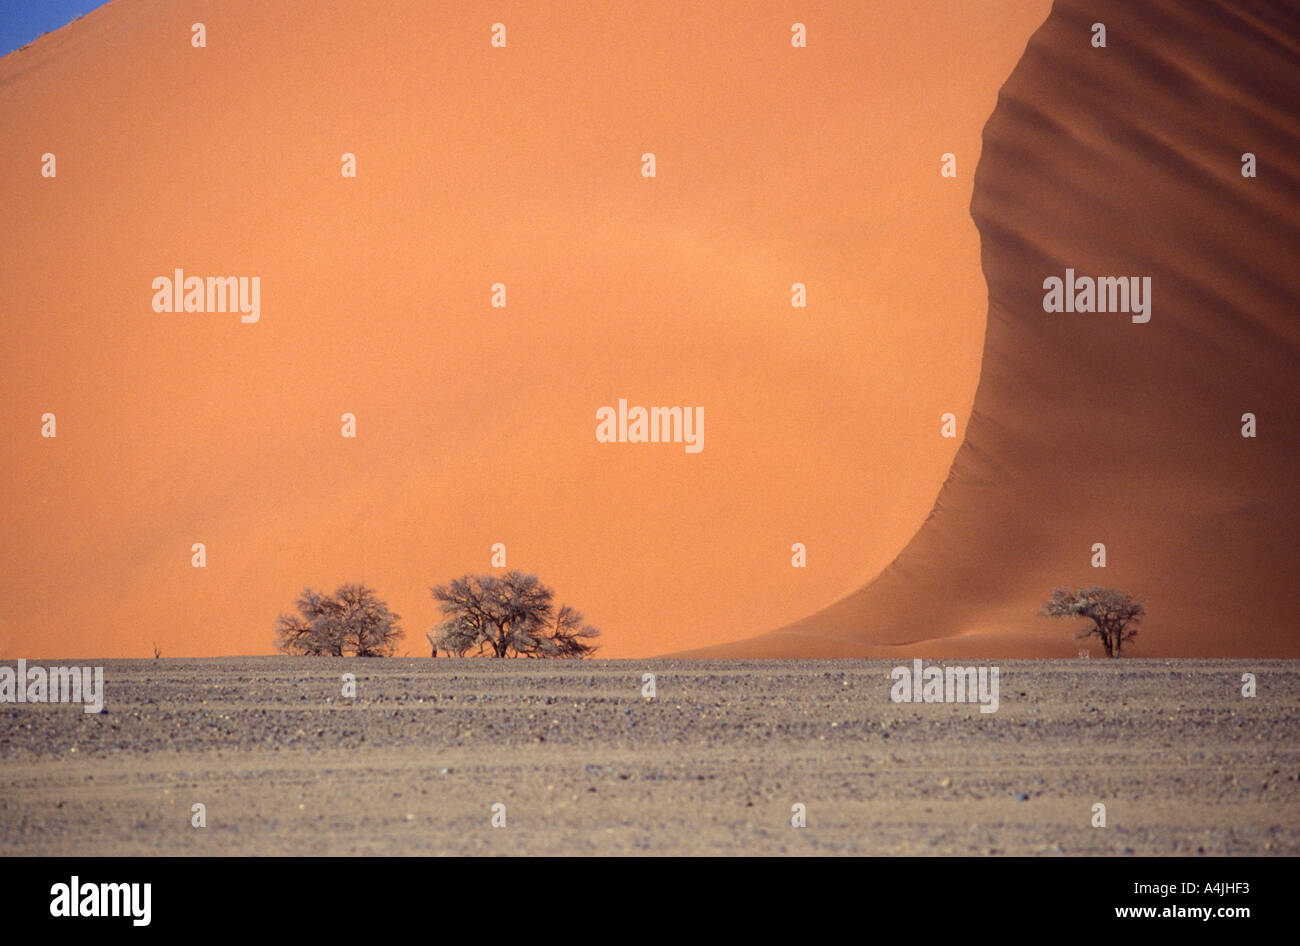 Dune de sable avec des arbres gigantesques Afrique Namibie Banque D'Images